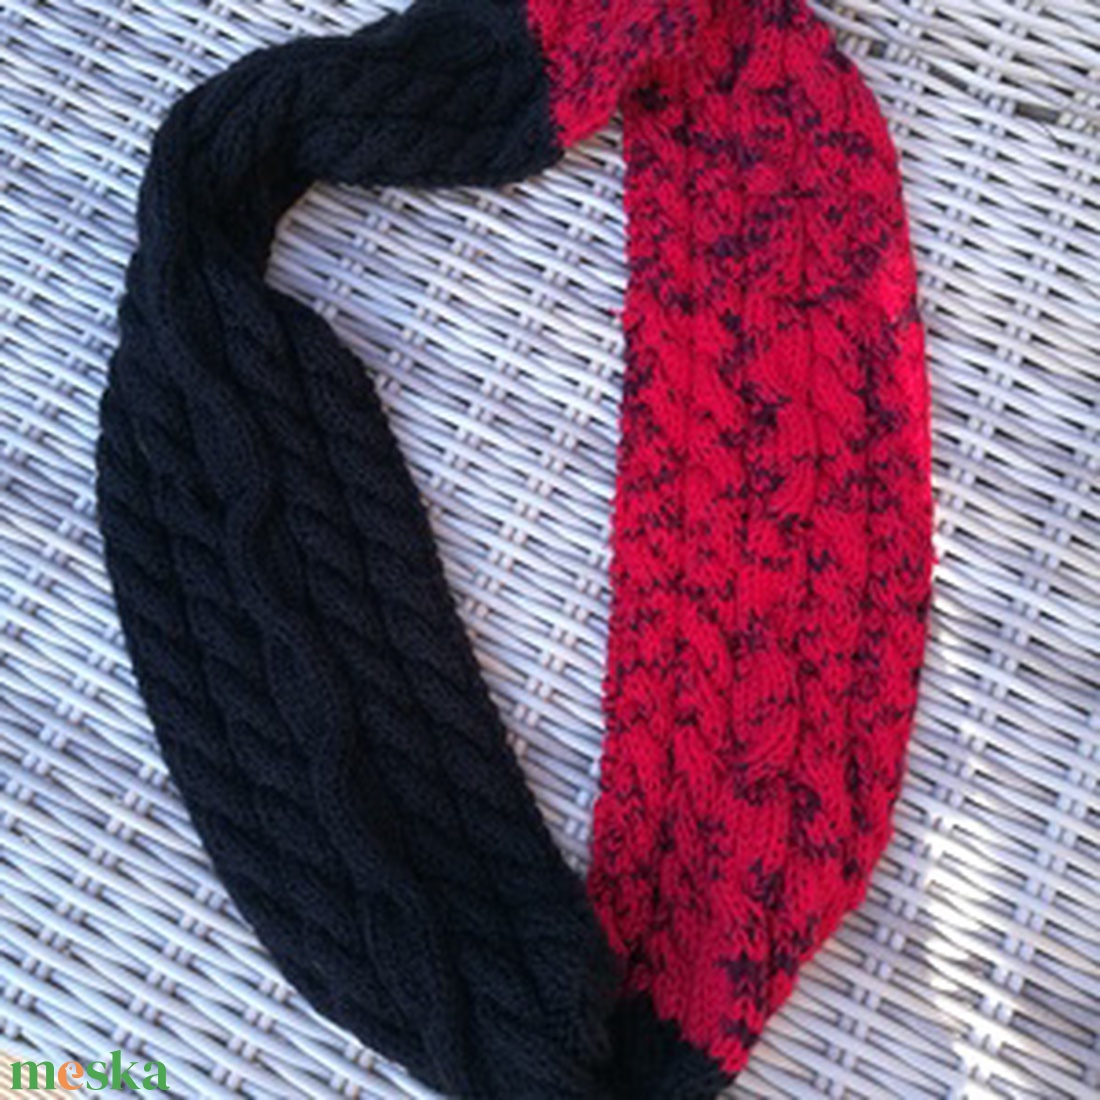 Sál, Kézi kötésű Piros melírozott és fekete pamut fonalból készült csavart mintás kötött sál eladó - ruha & divat - sál, sapka, kendő - sál - Meska.hu